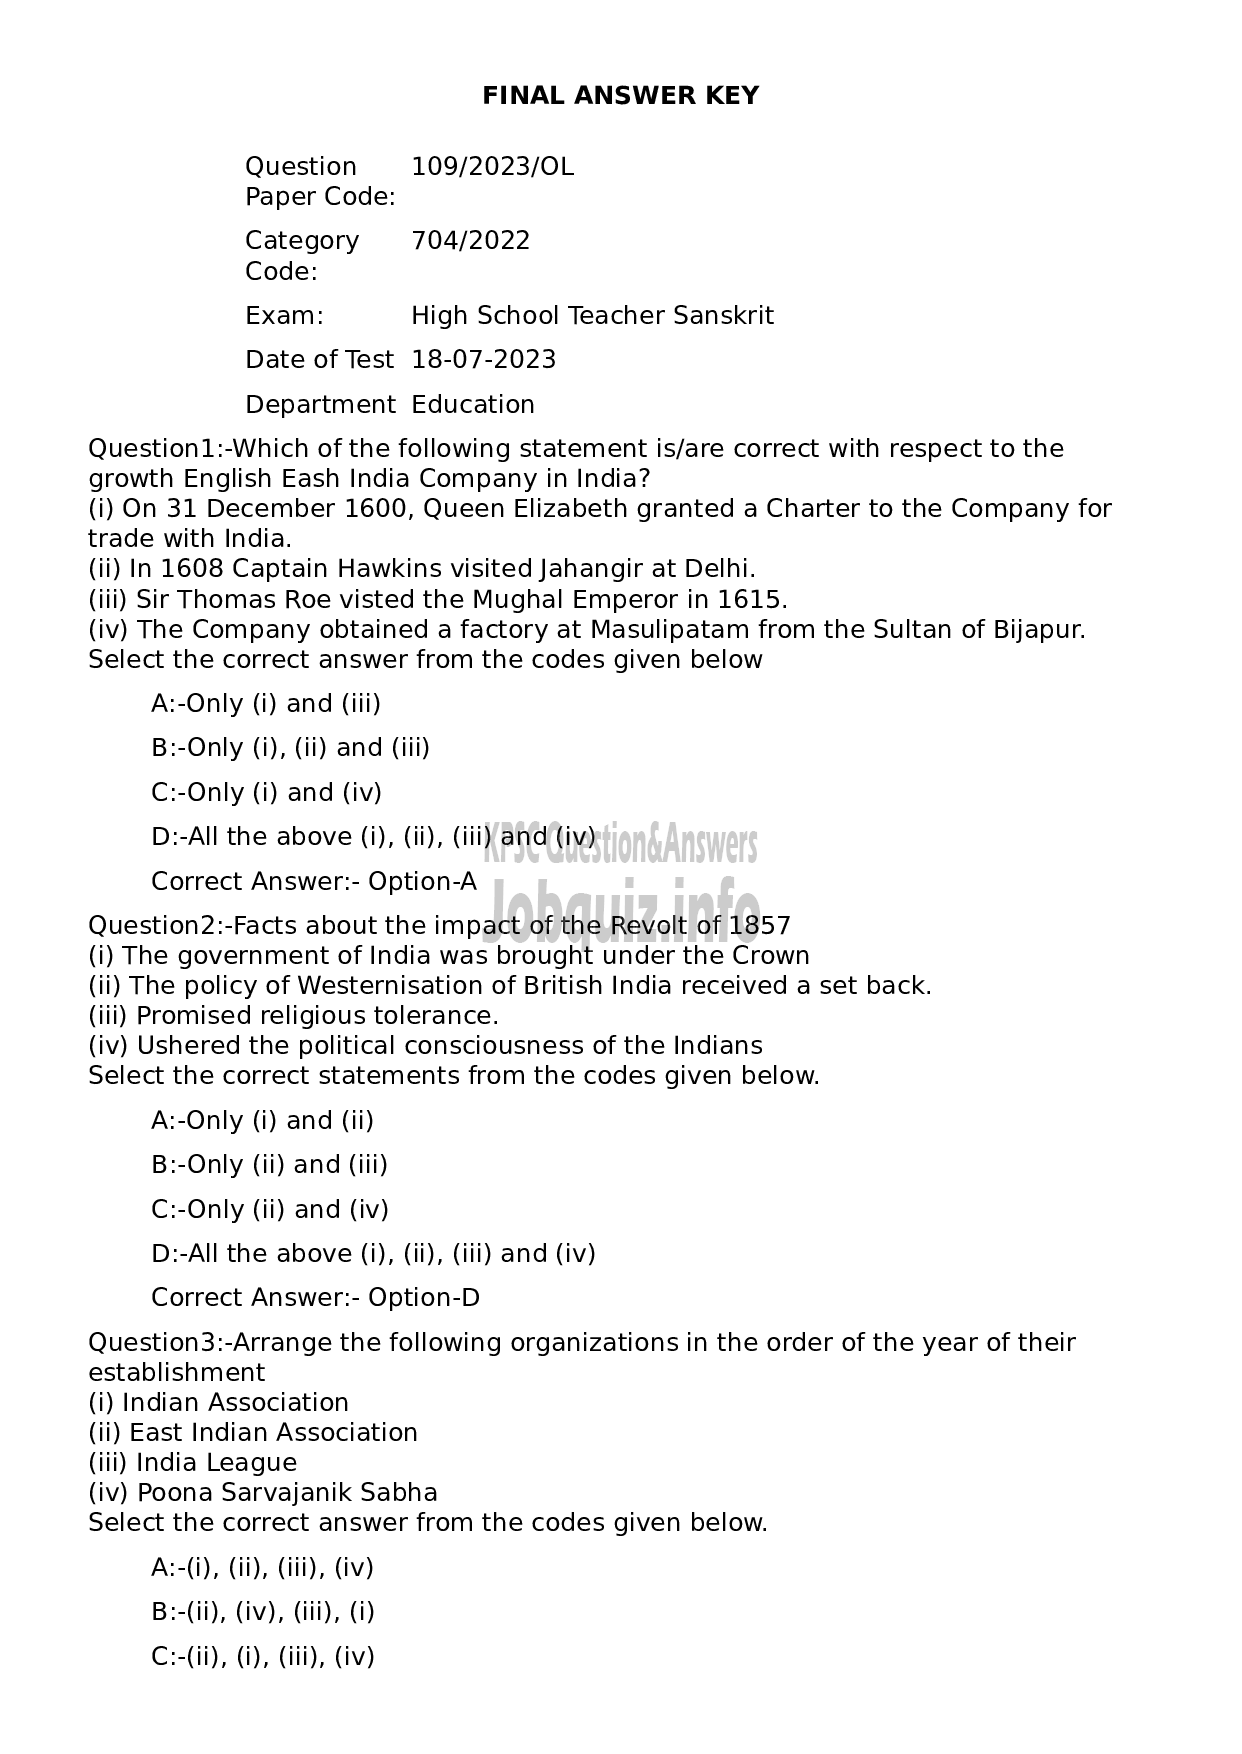 Kerala PSC Question Paper - High School Teacher Sanskrit-1